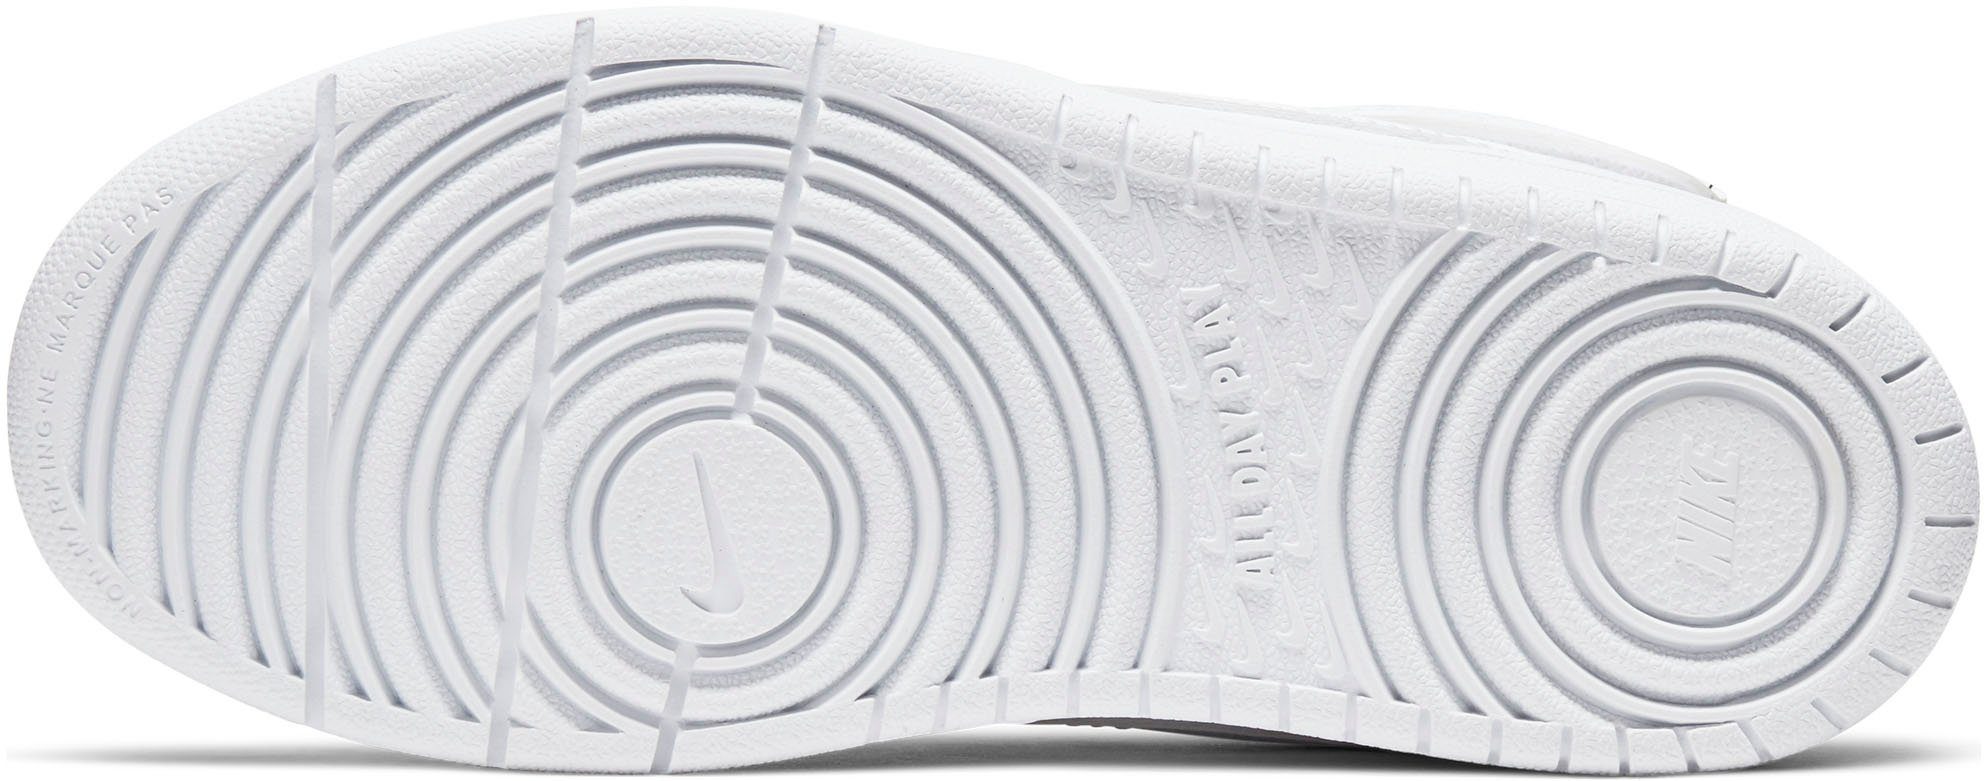 Nike Sportswear COURT BOROUGH den Design Force Air Spuren MID Sneaker des 2 auf 1